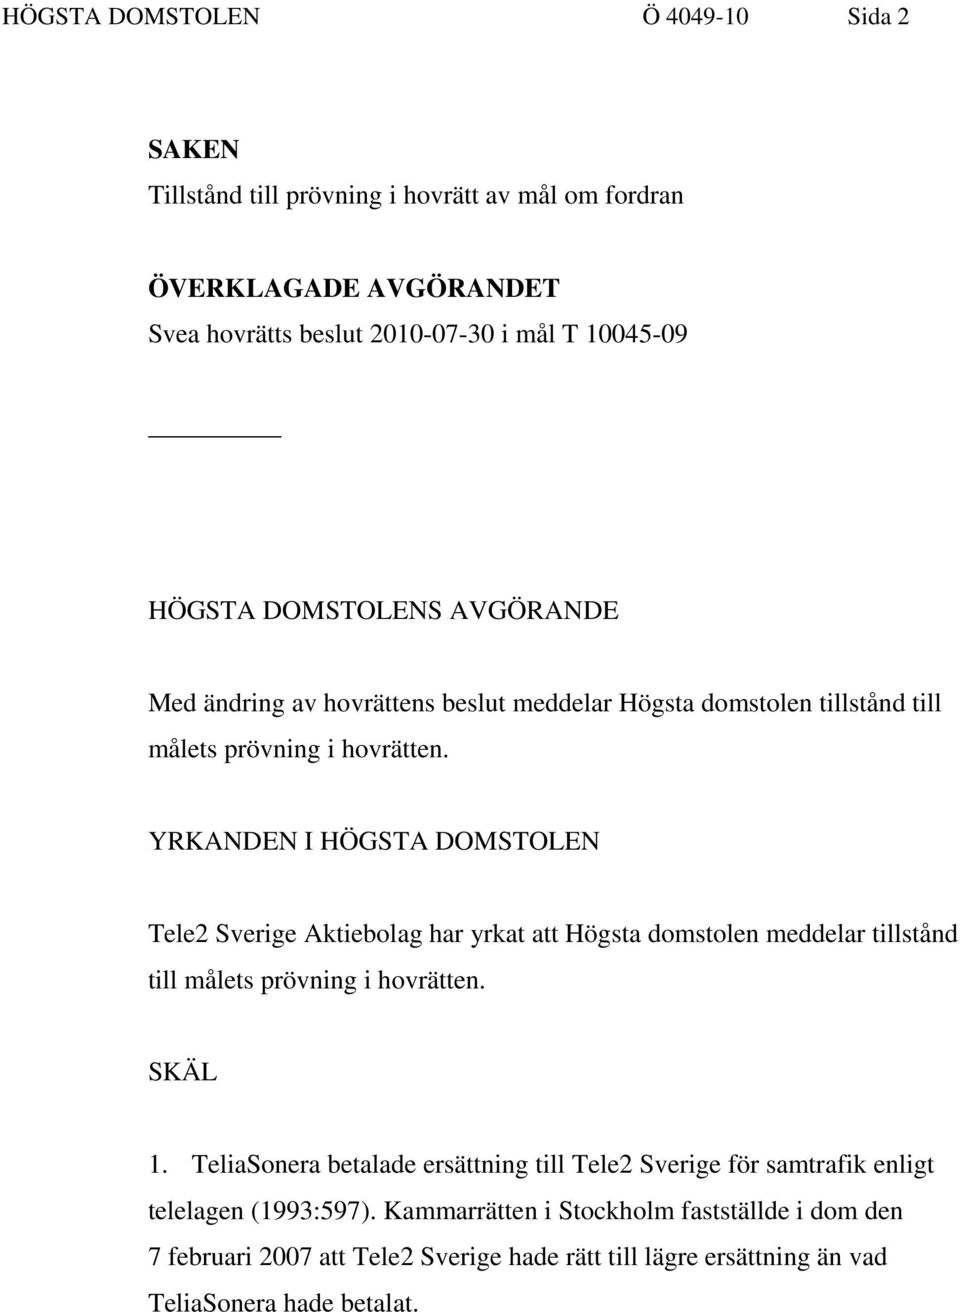 YRKANDEN I HÖGSTA DOMSTOLEN Tele2 Sverige Aktiebolag har yrkat att Högsta domstolen meddelar tillstånd till målets prövning i hovrätten. SKÄL 1.